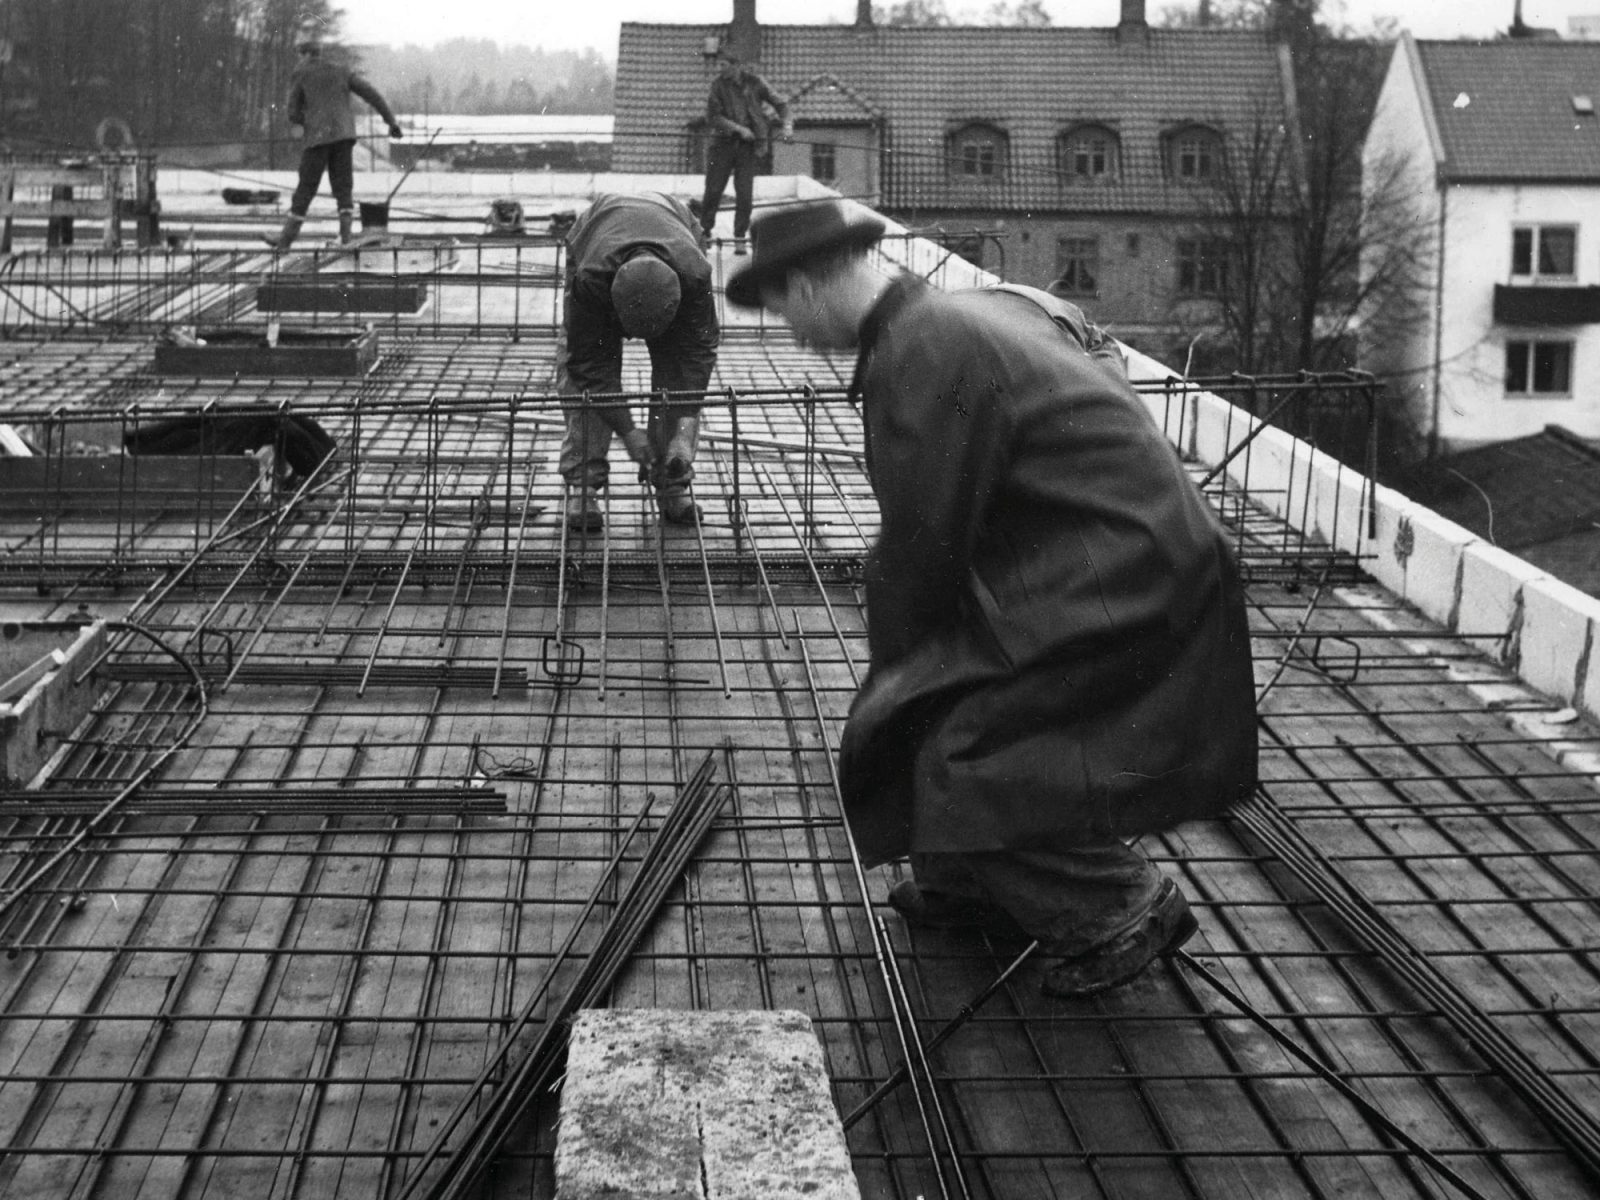 Mann im Stil der 1950er mit Hut und Mantel gemeinsam mit anderen auf einer Baustelle.